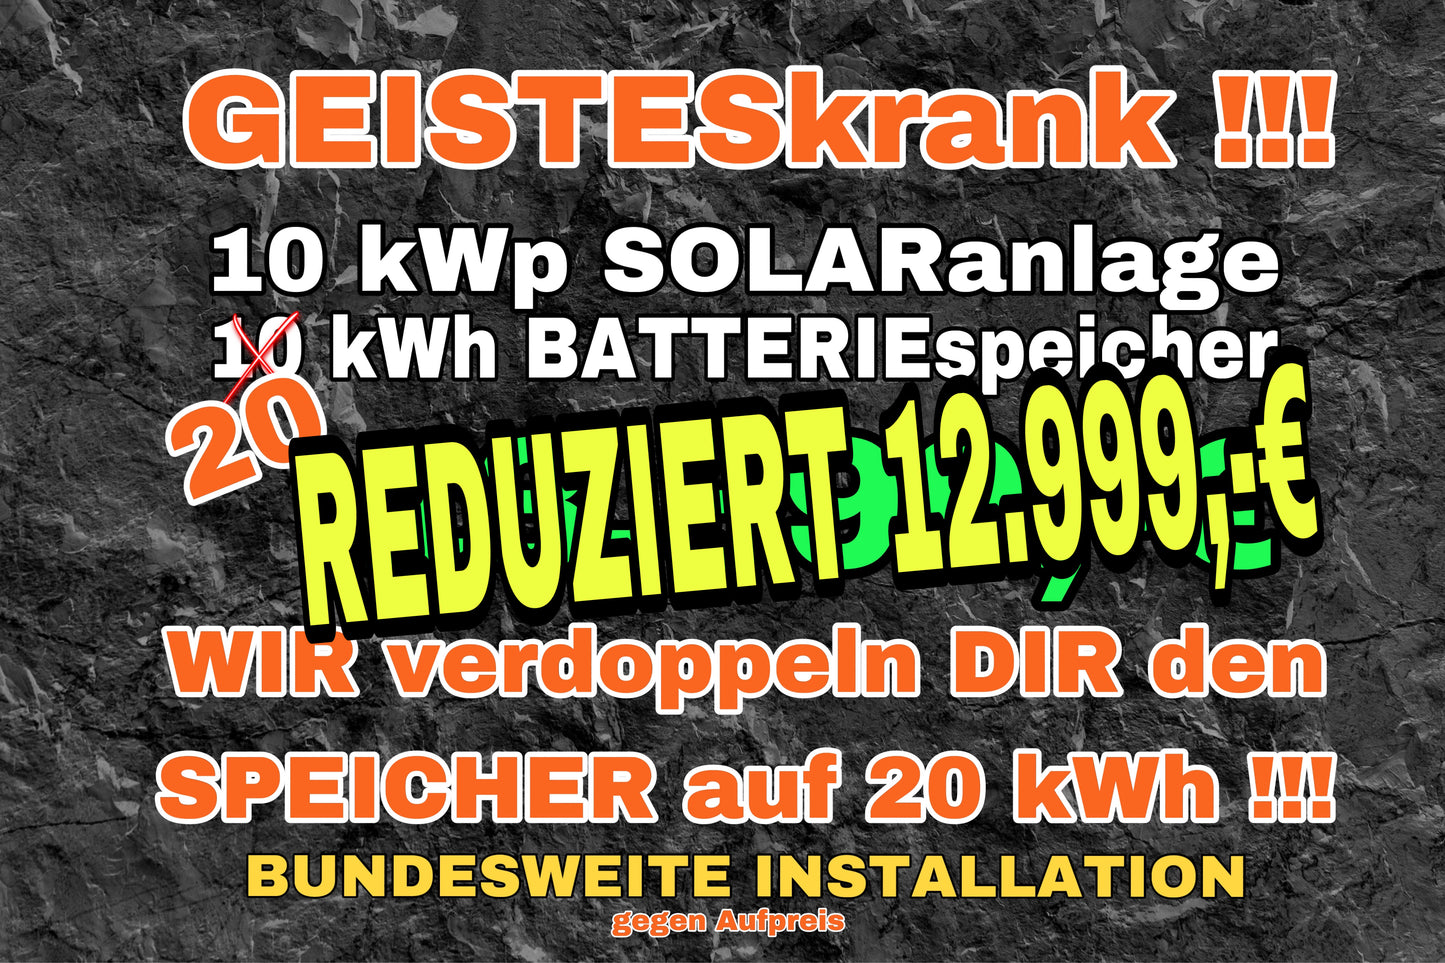 20 kWh Batterie-Angebot: 10 kWp Solaranlagen Angebot - verdoppelter Batteriespeicher auf 20 kwh